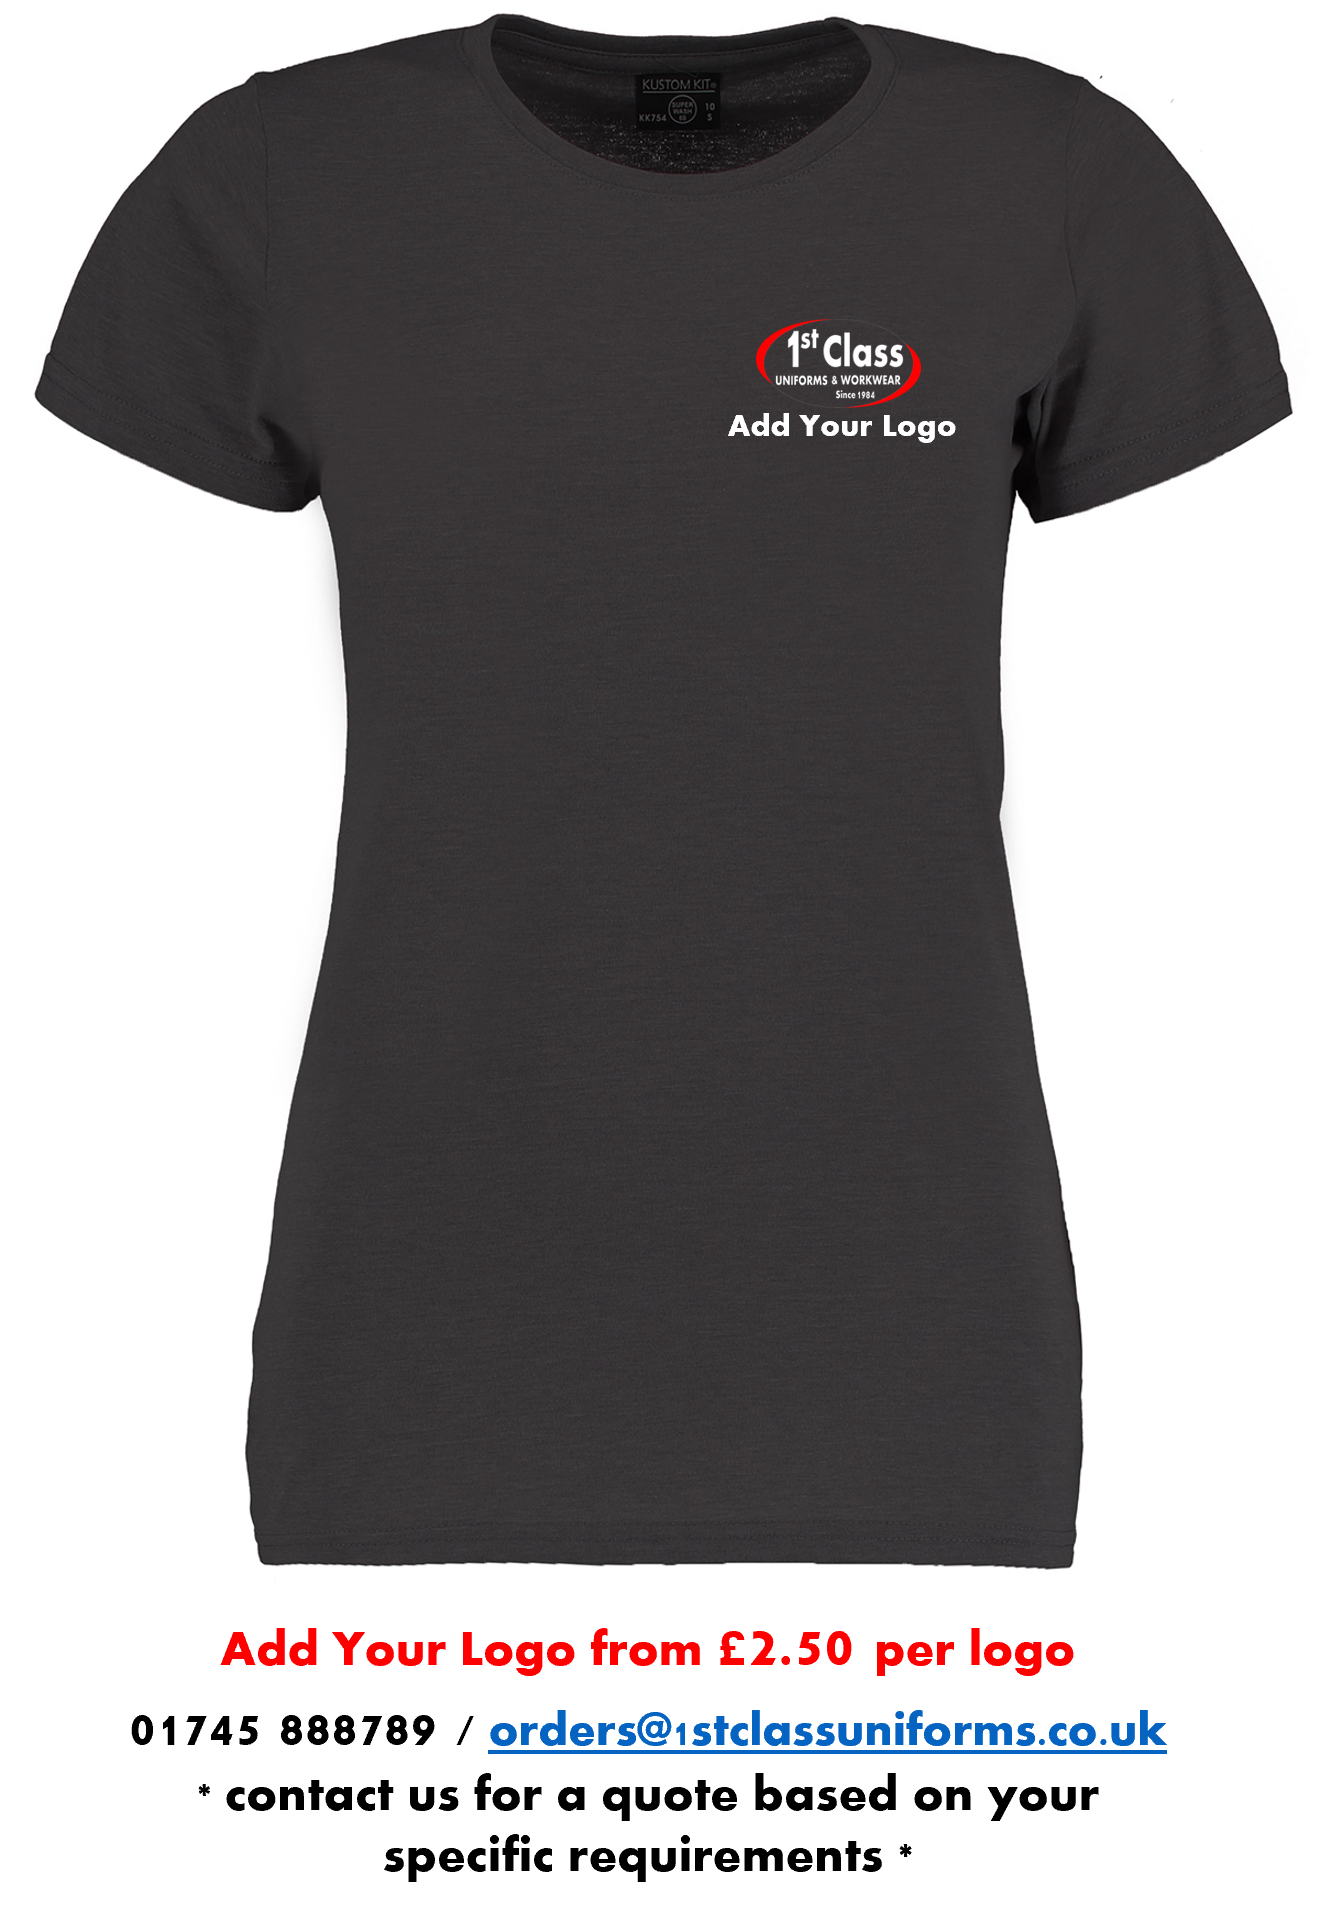 Kustom Kit KK754 Women's Superwash® 60° T-Shirt